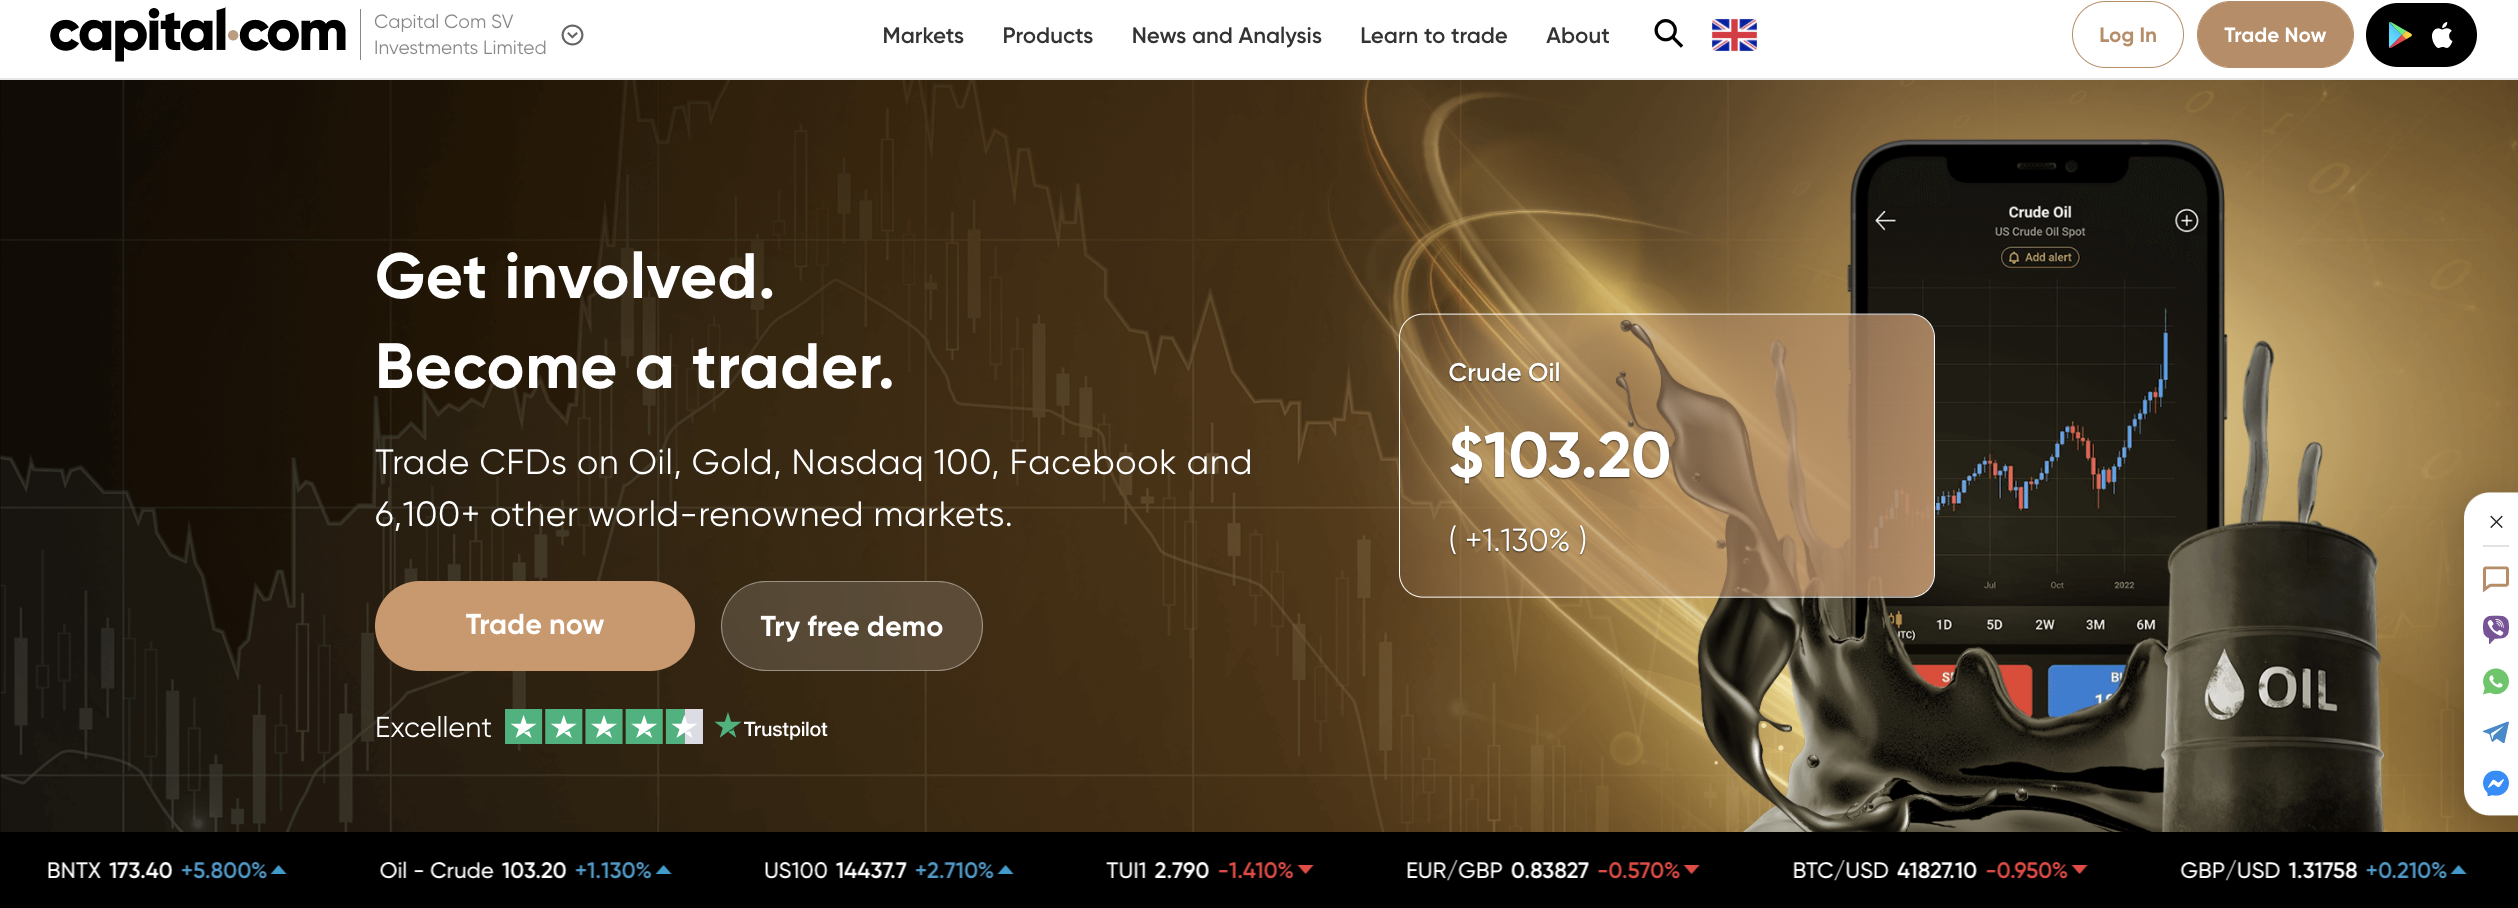 De officiële website van de forex broker Capital.com